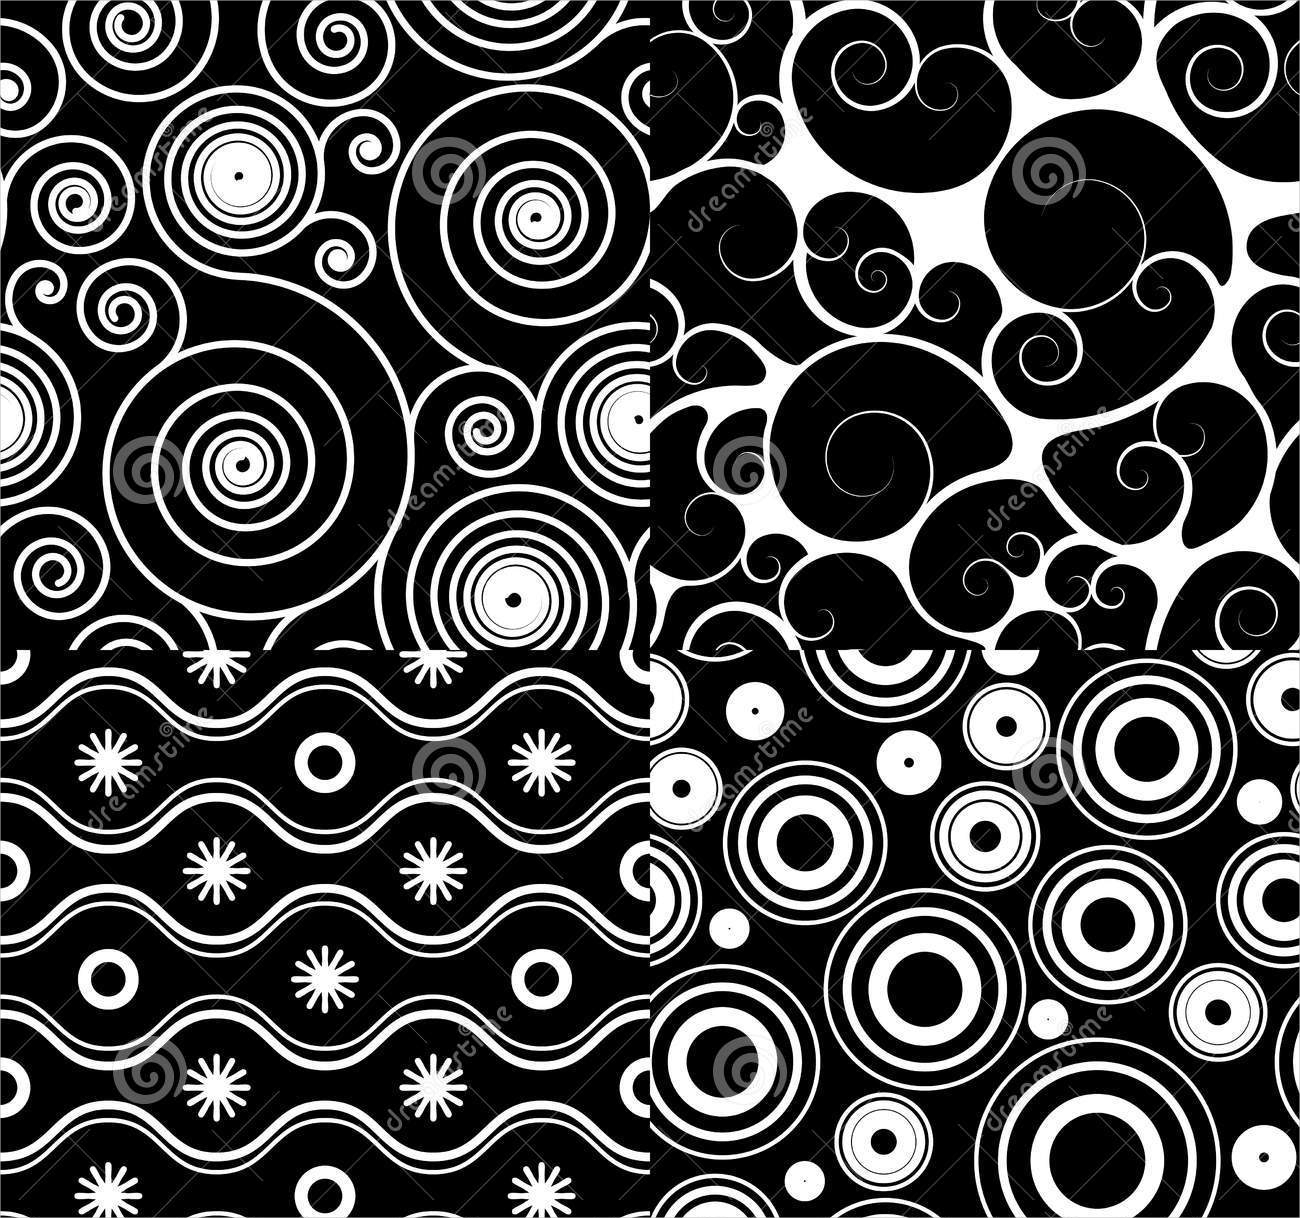 spirals and swirl pattern set